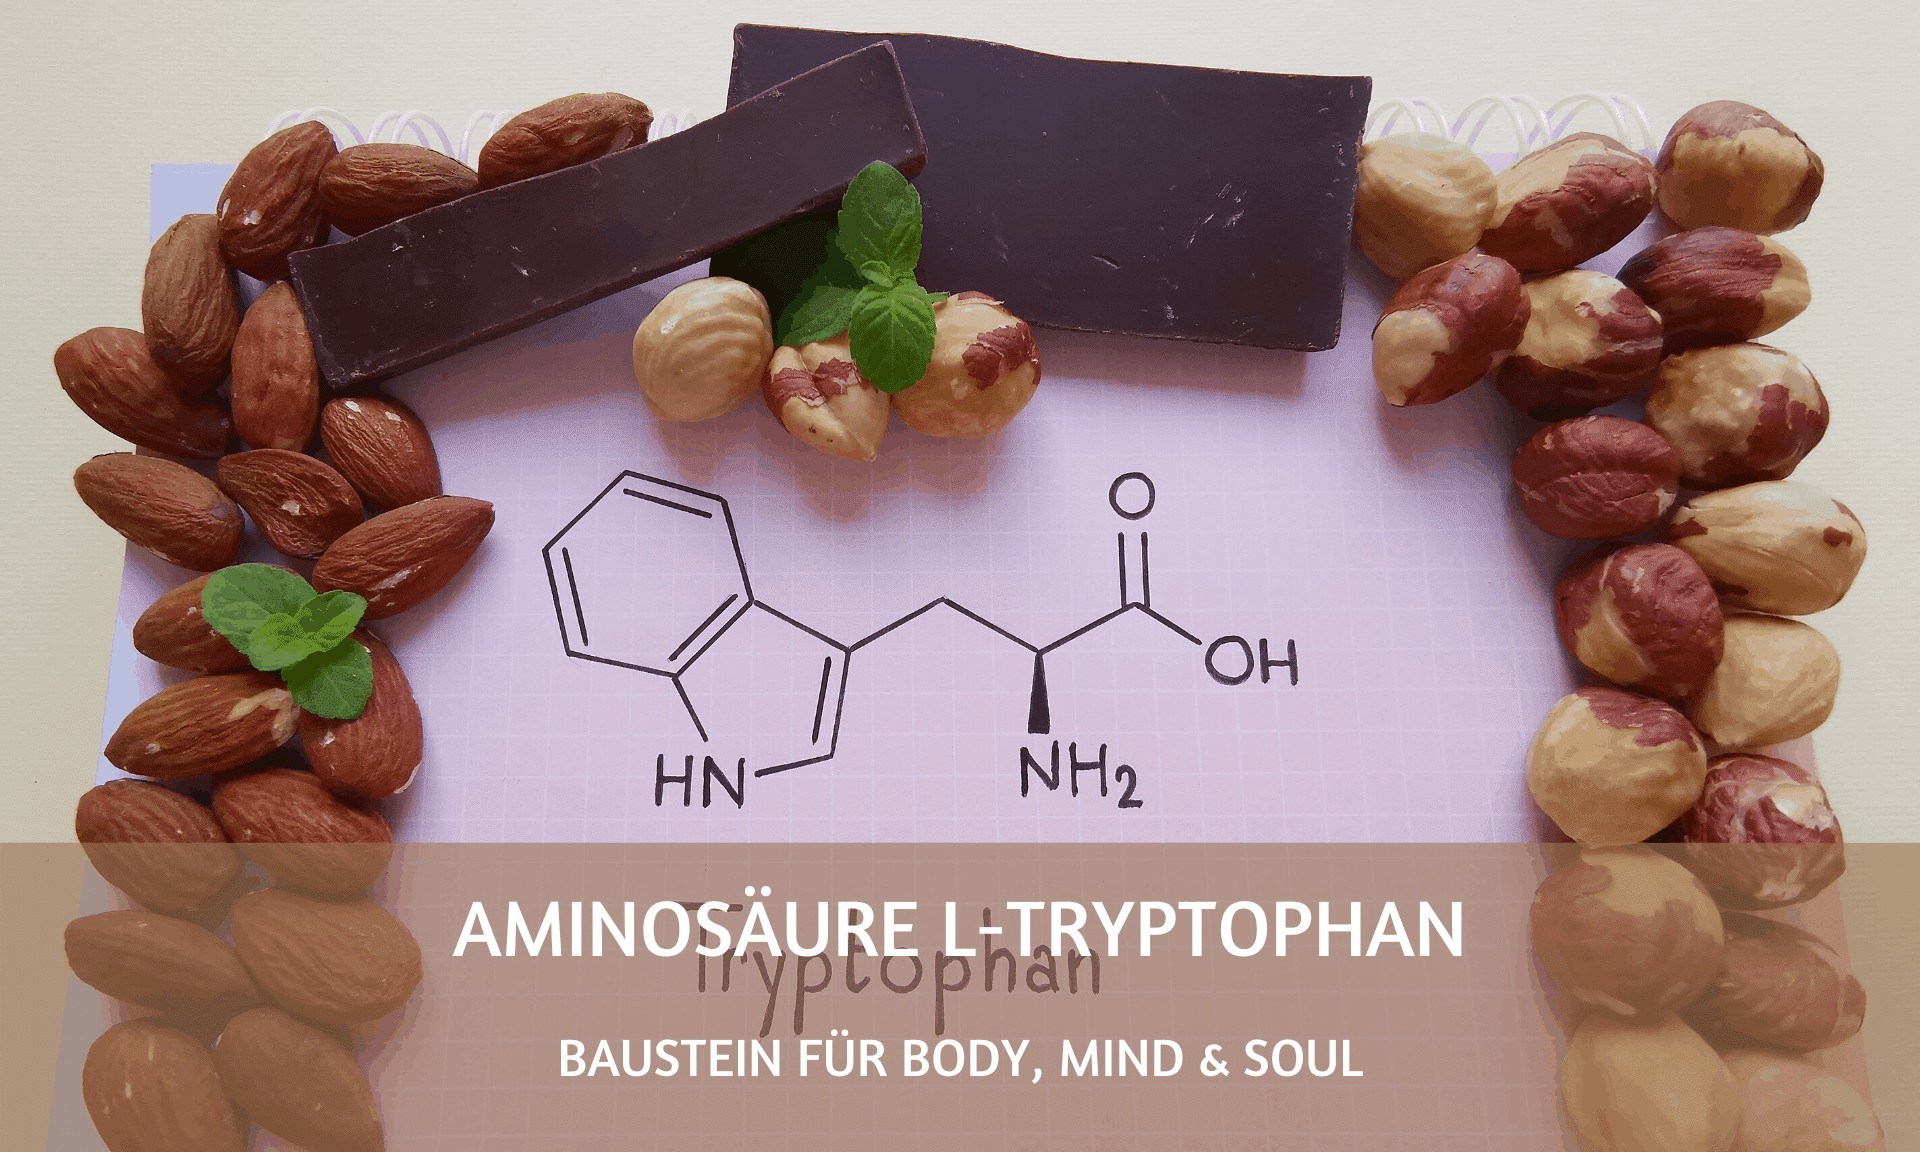 Baustein für Body, Mind & Soul: die Aminosäure L-Tryptophan